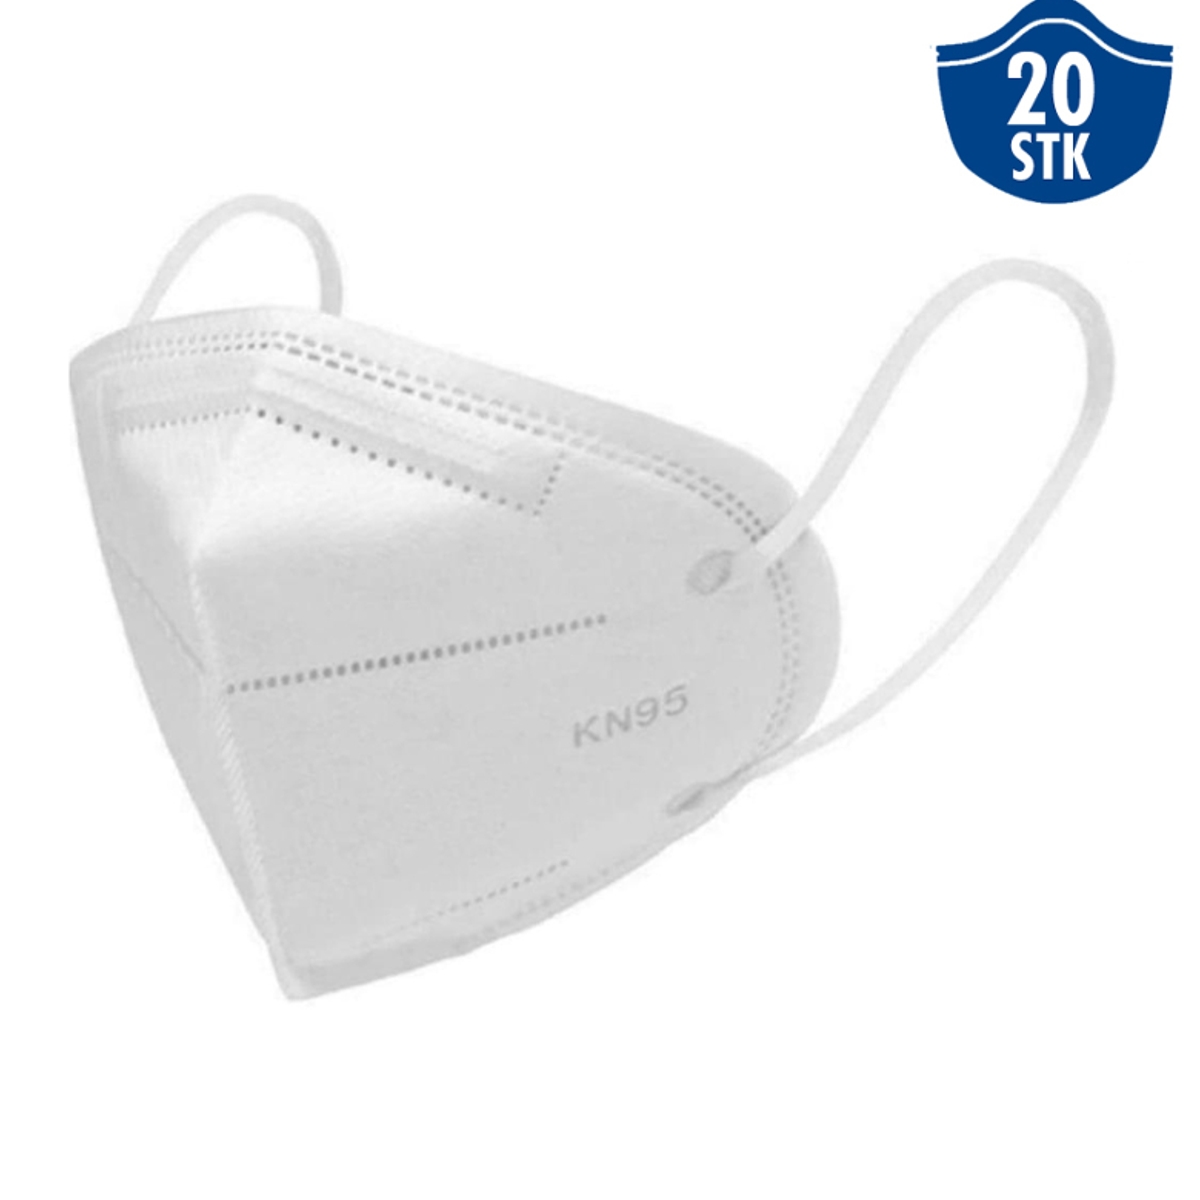 20 Stk. | KN95 Mundschutz Maske ohne Ventil, Atemschutz, Masken